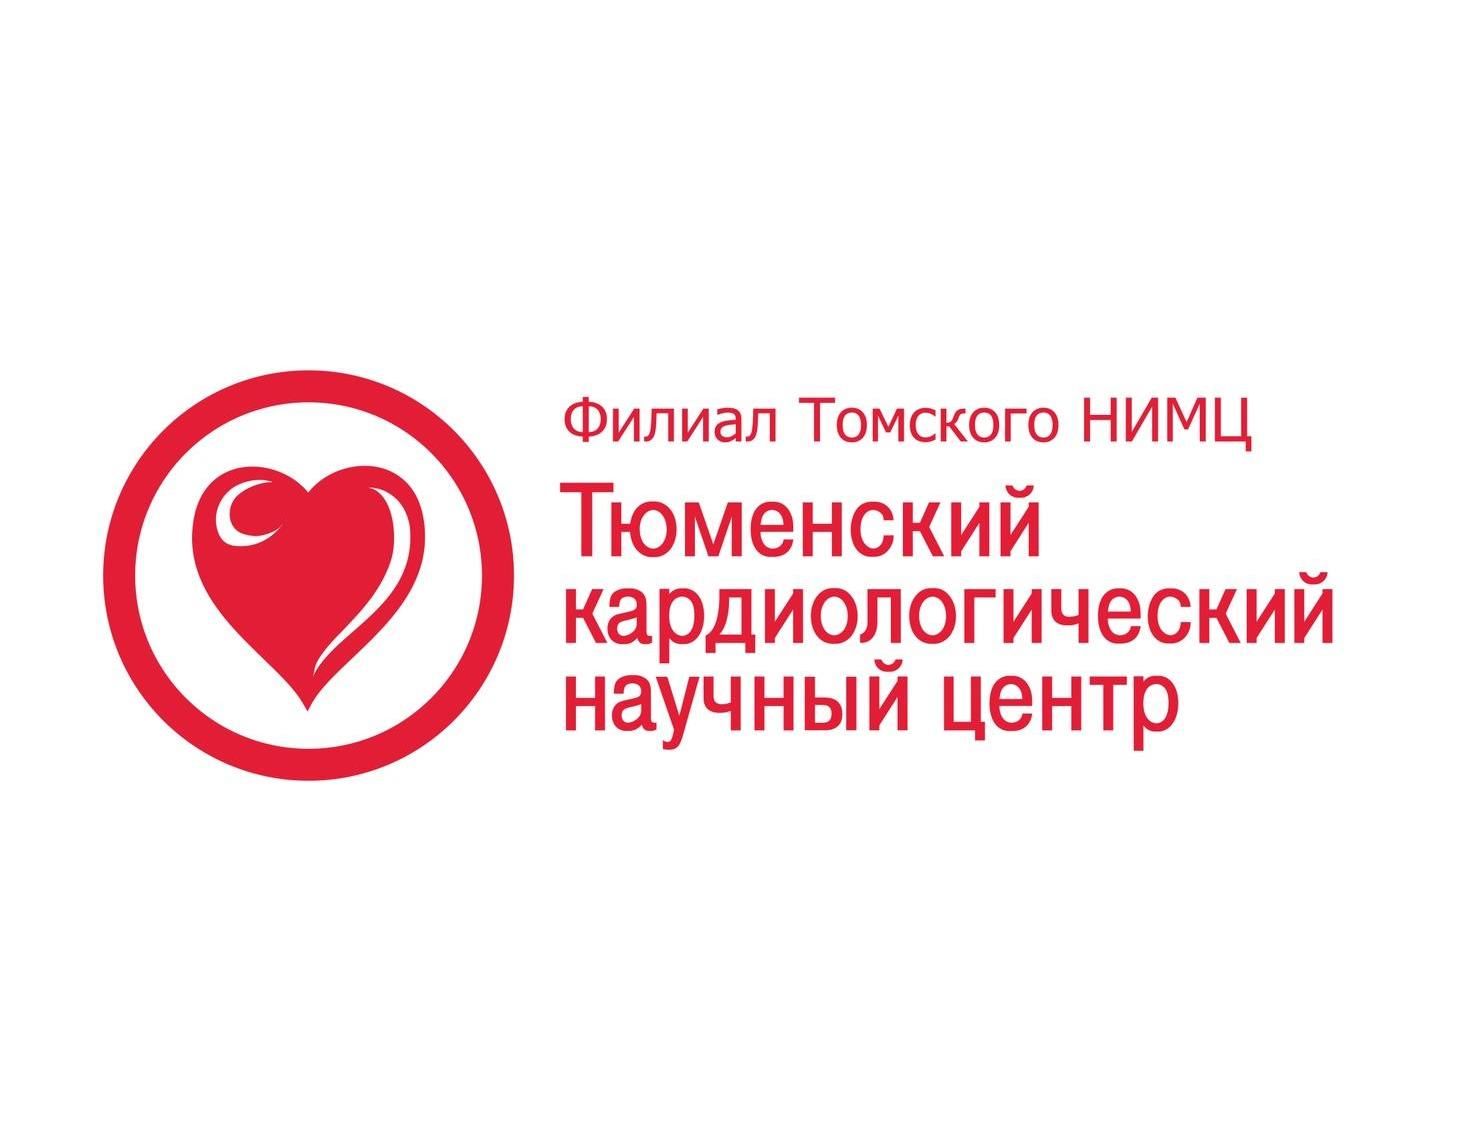 Конференция «Пациент высокого сердечно-сосудистого риска в практике кардиолога и терапевта» - 2009